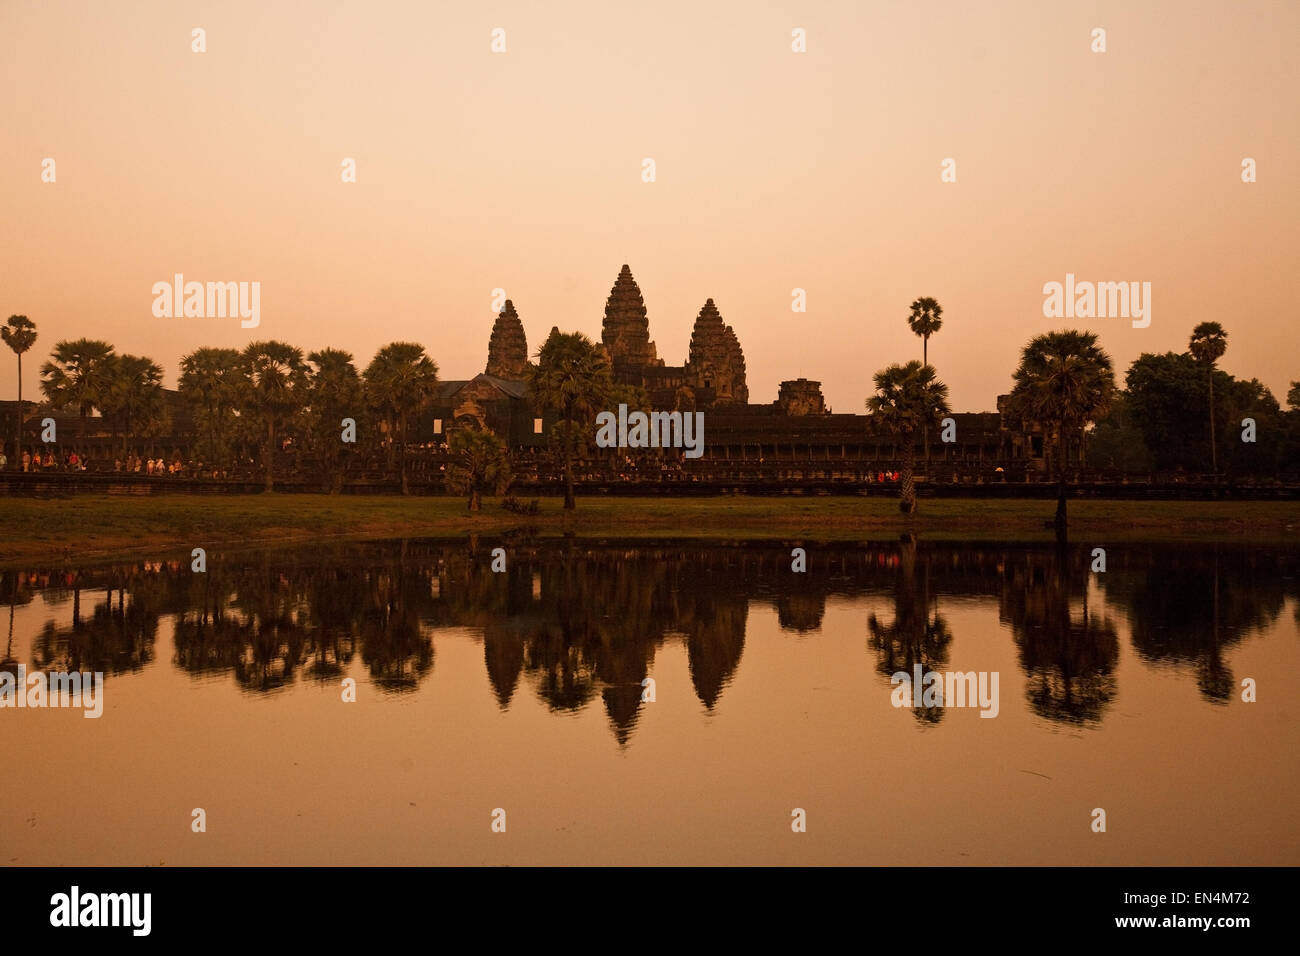 Schöne Tempel von Angkor Wat bei Sonnenuntergang, Kambodscha. Stockfoto